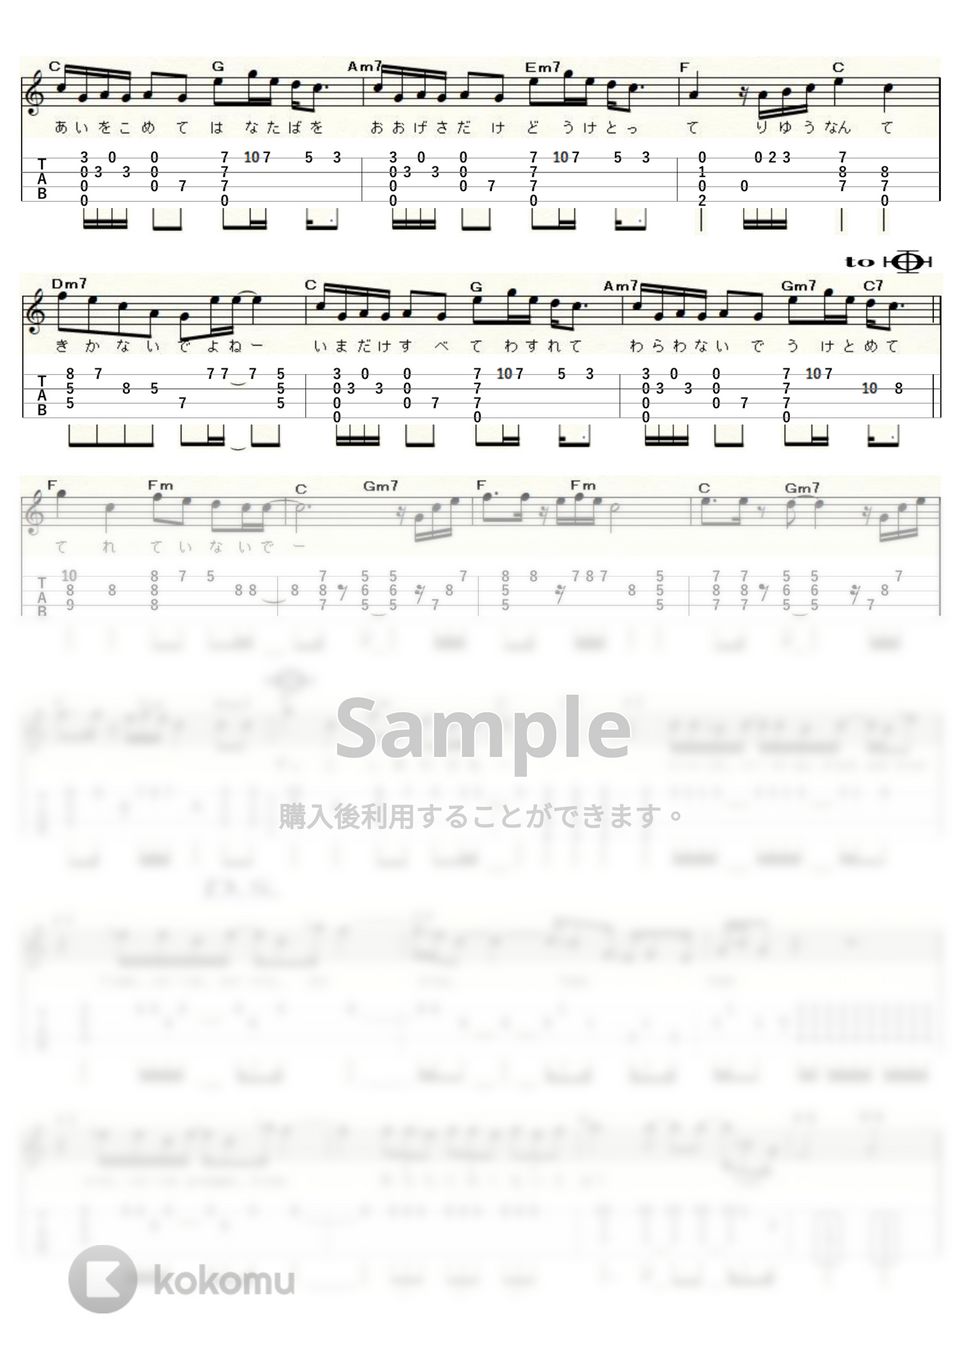 Superfly - 愛をこめて花束を (ｳｸﾚﾚｿﾛ / High-G・Low-G / 中級～上級) by ukulelepapa